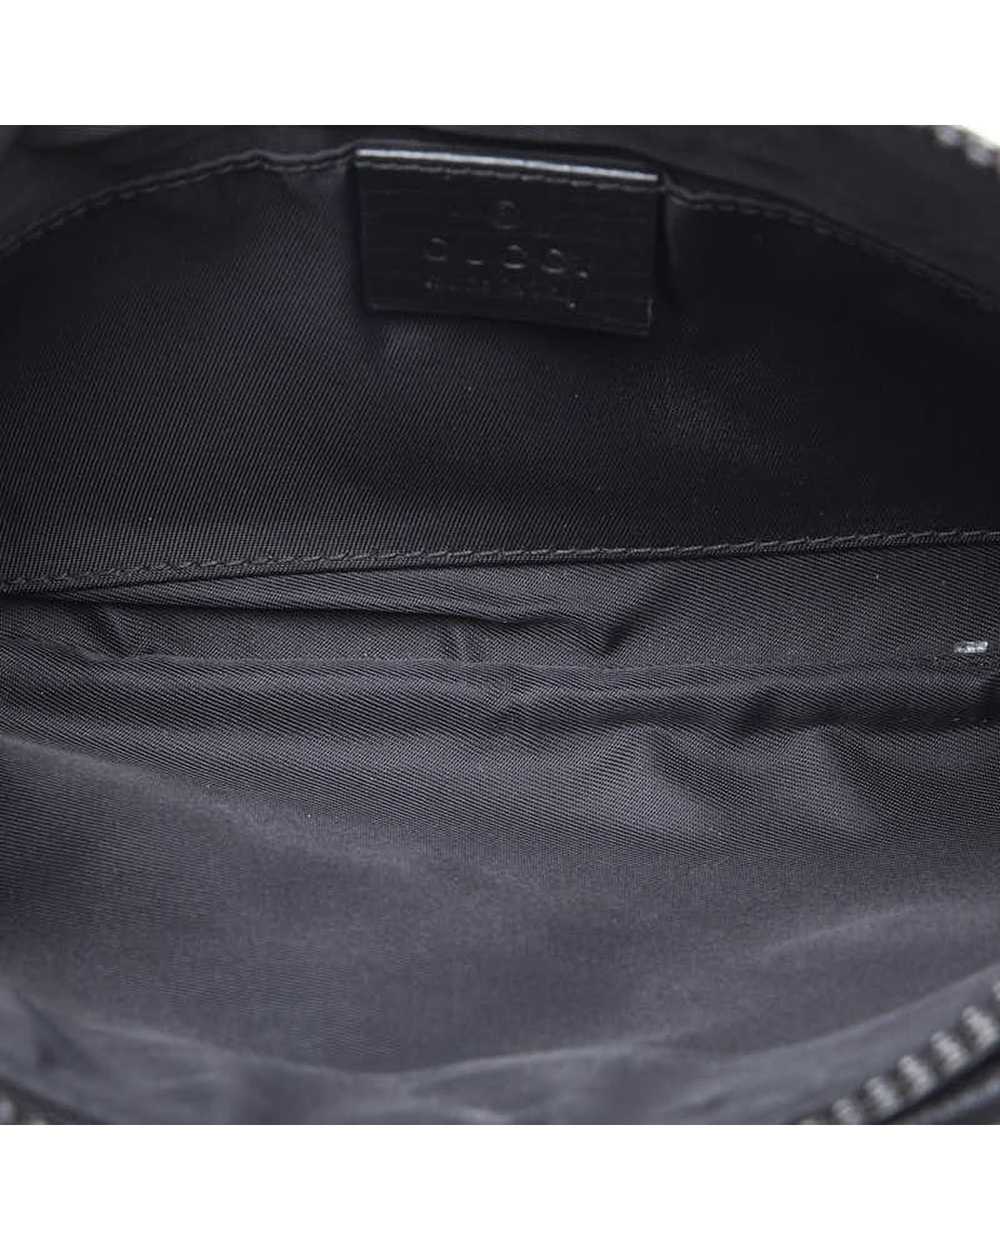 Gucci Black GG Supreme Belt Bag in Excellent Cond… - image 6